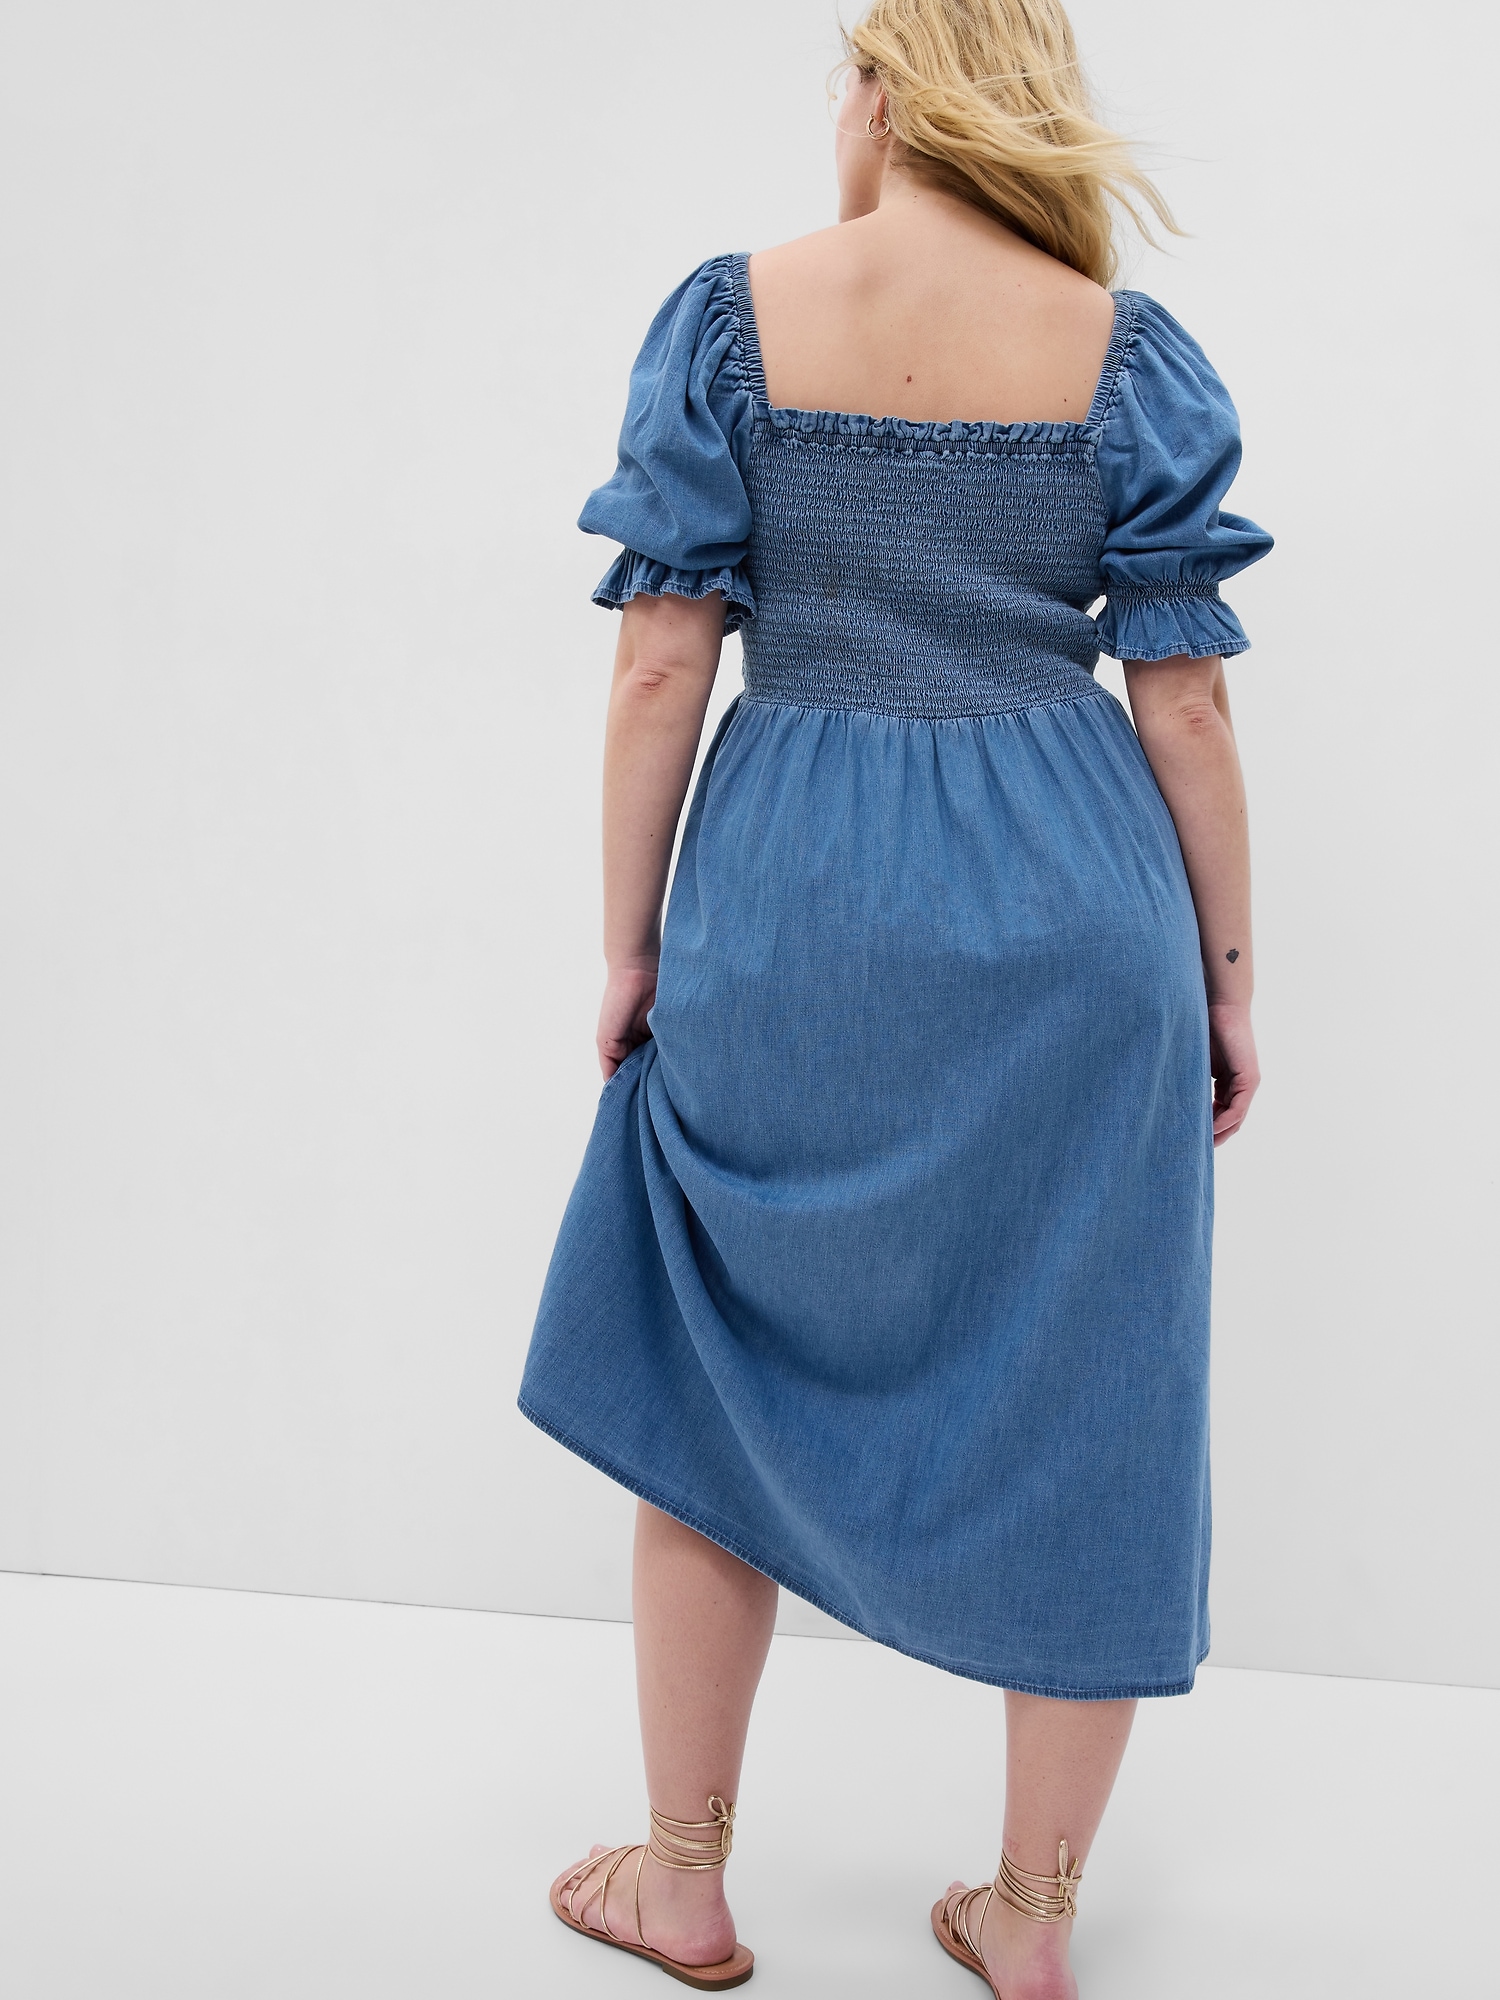 Retrofete Sibi Puff-Sleeve Denim Mini Dress Size L NWT | eBay